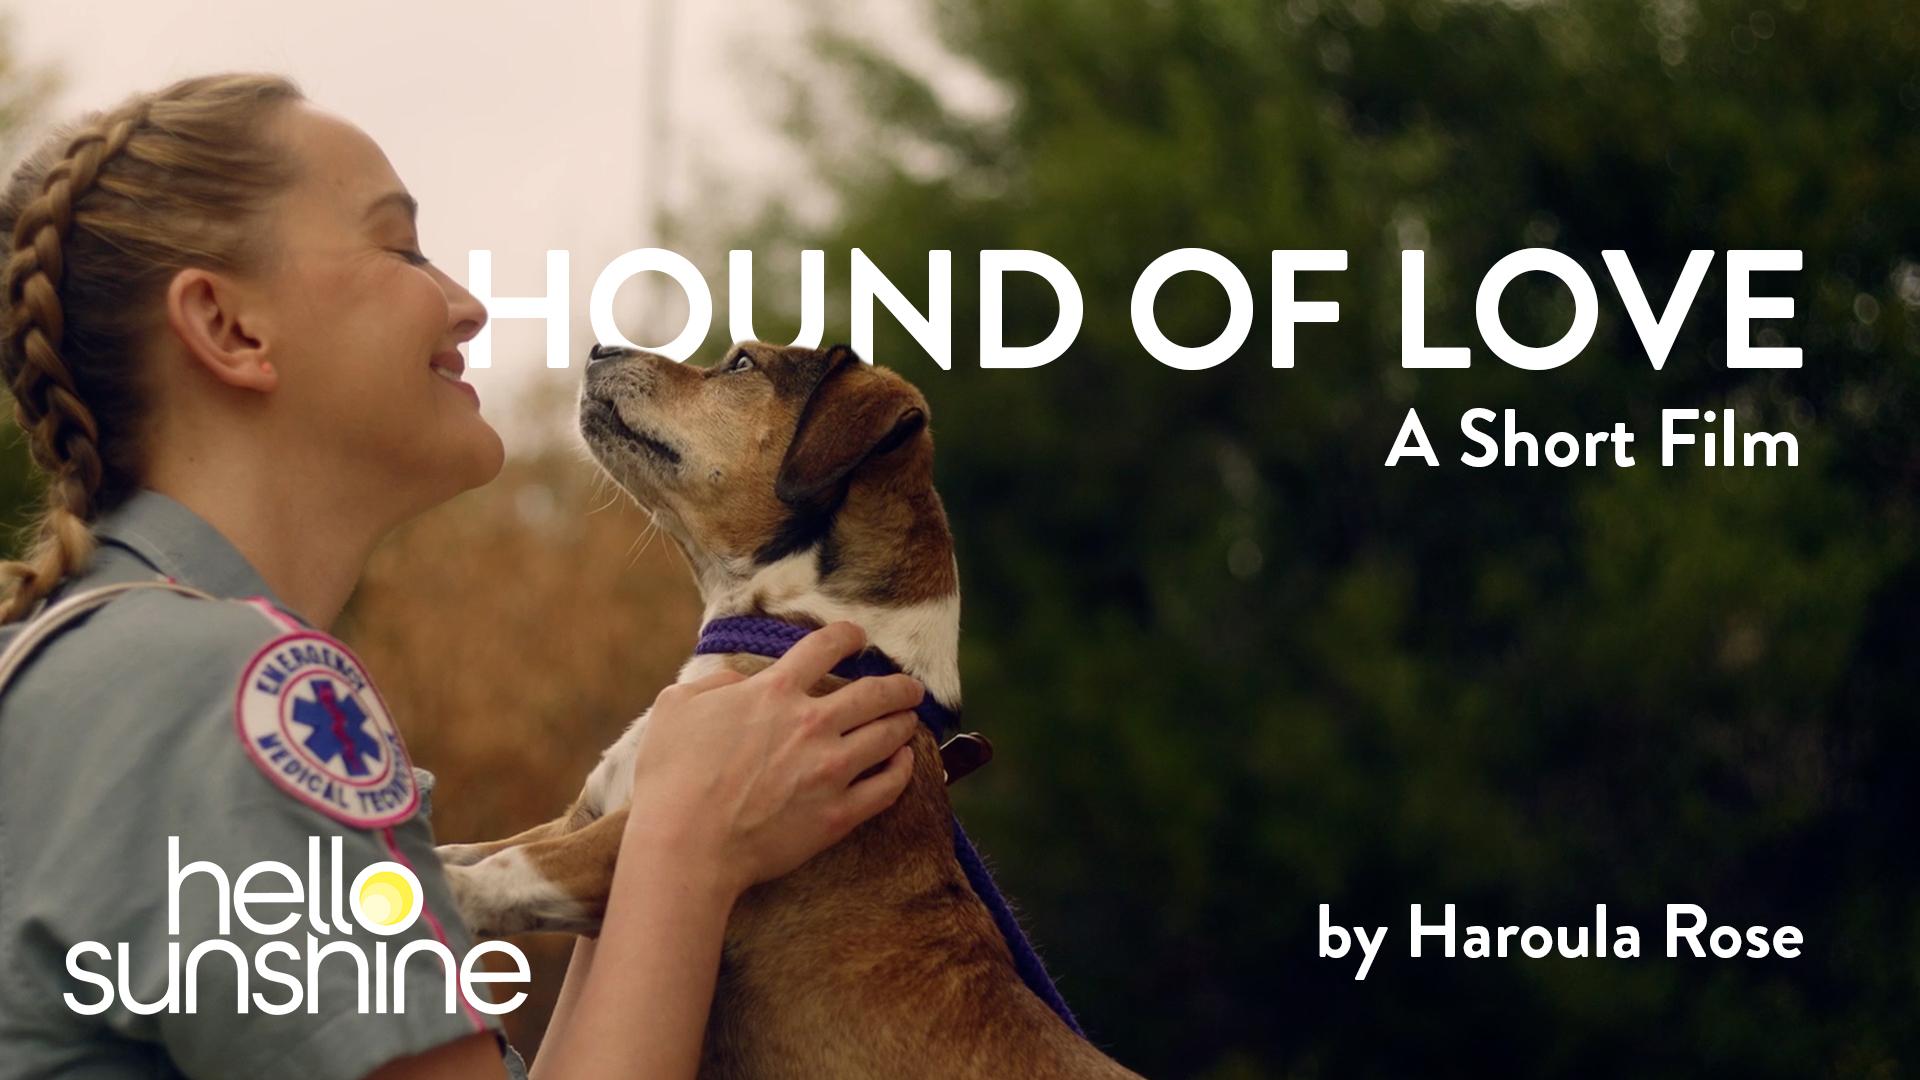 Hound of Love